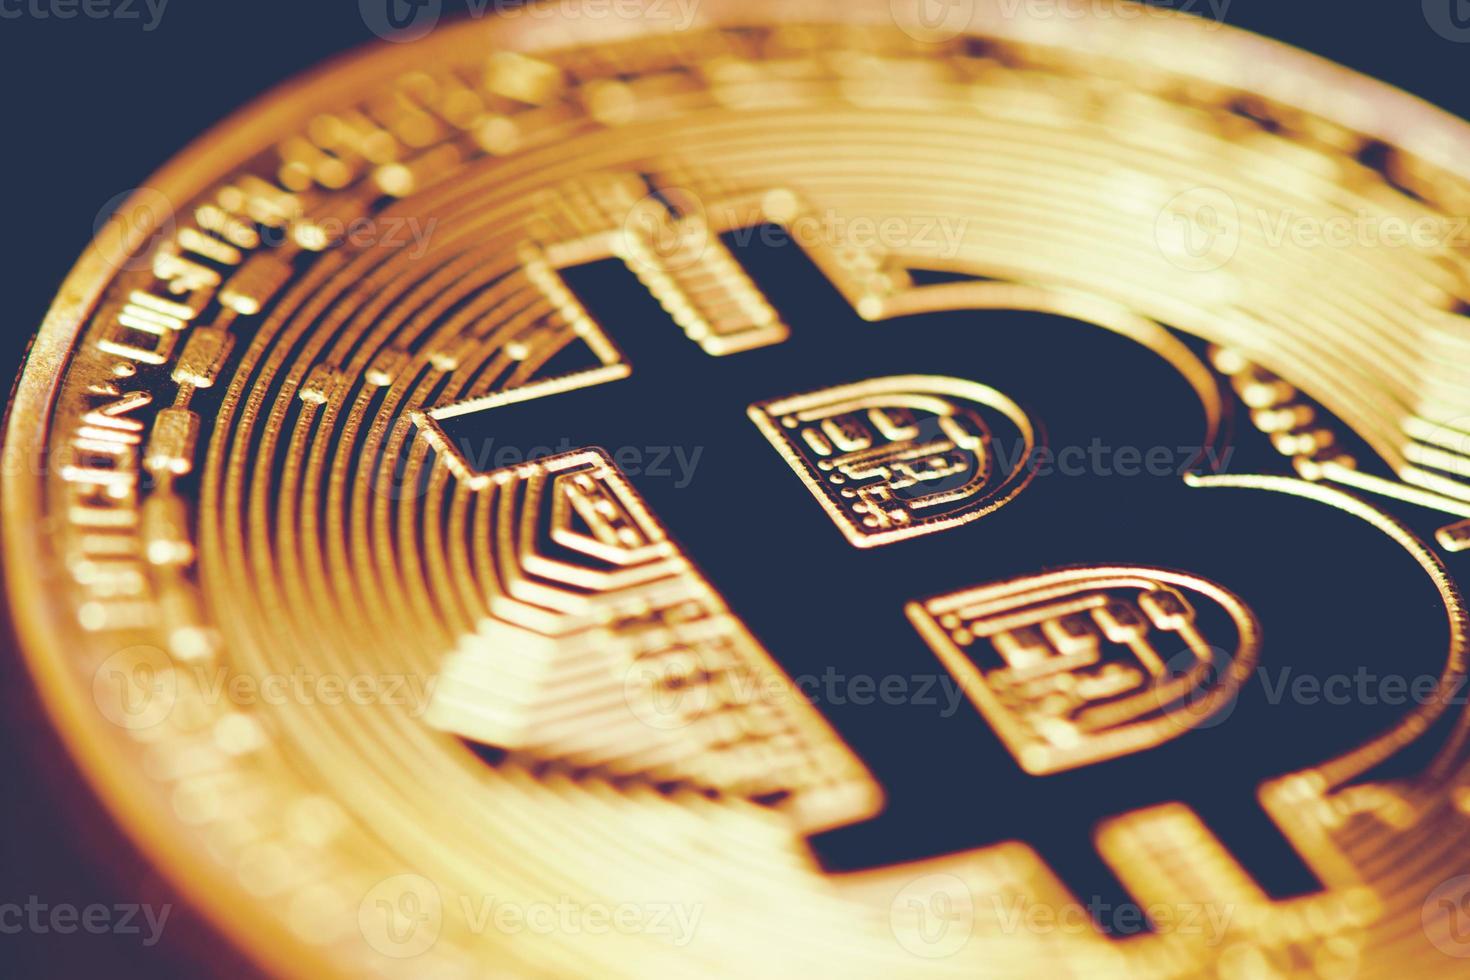 gyllene bitcoin. stängt bitmynt. kryptografi och elektroniska pengar koncept. valutahandel och guldbrytningstema. affärs- och teknik tema foto